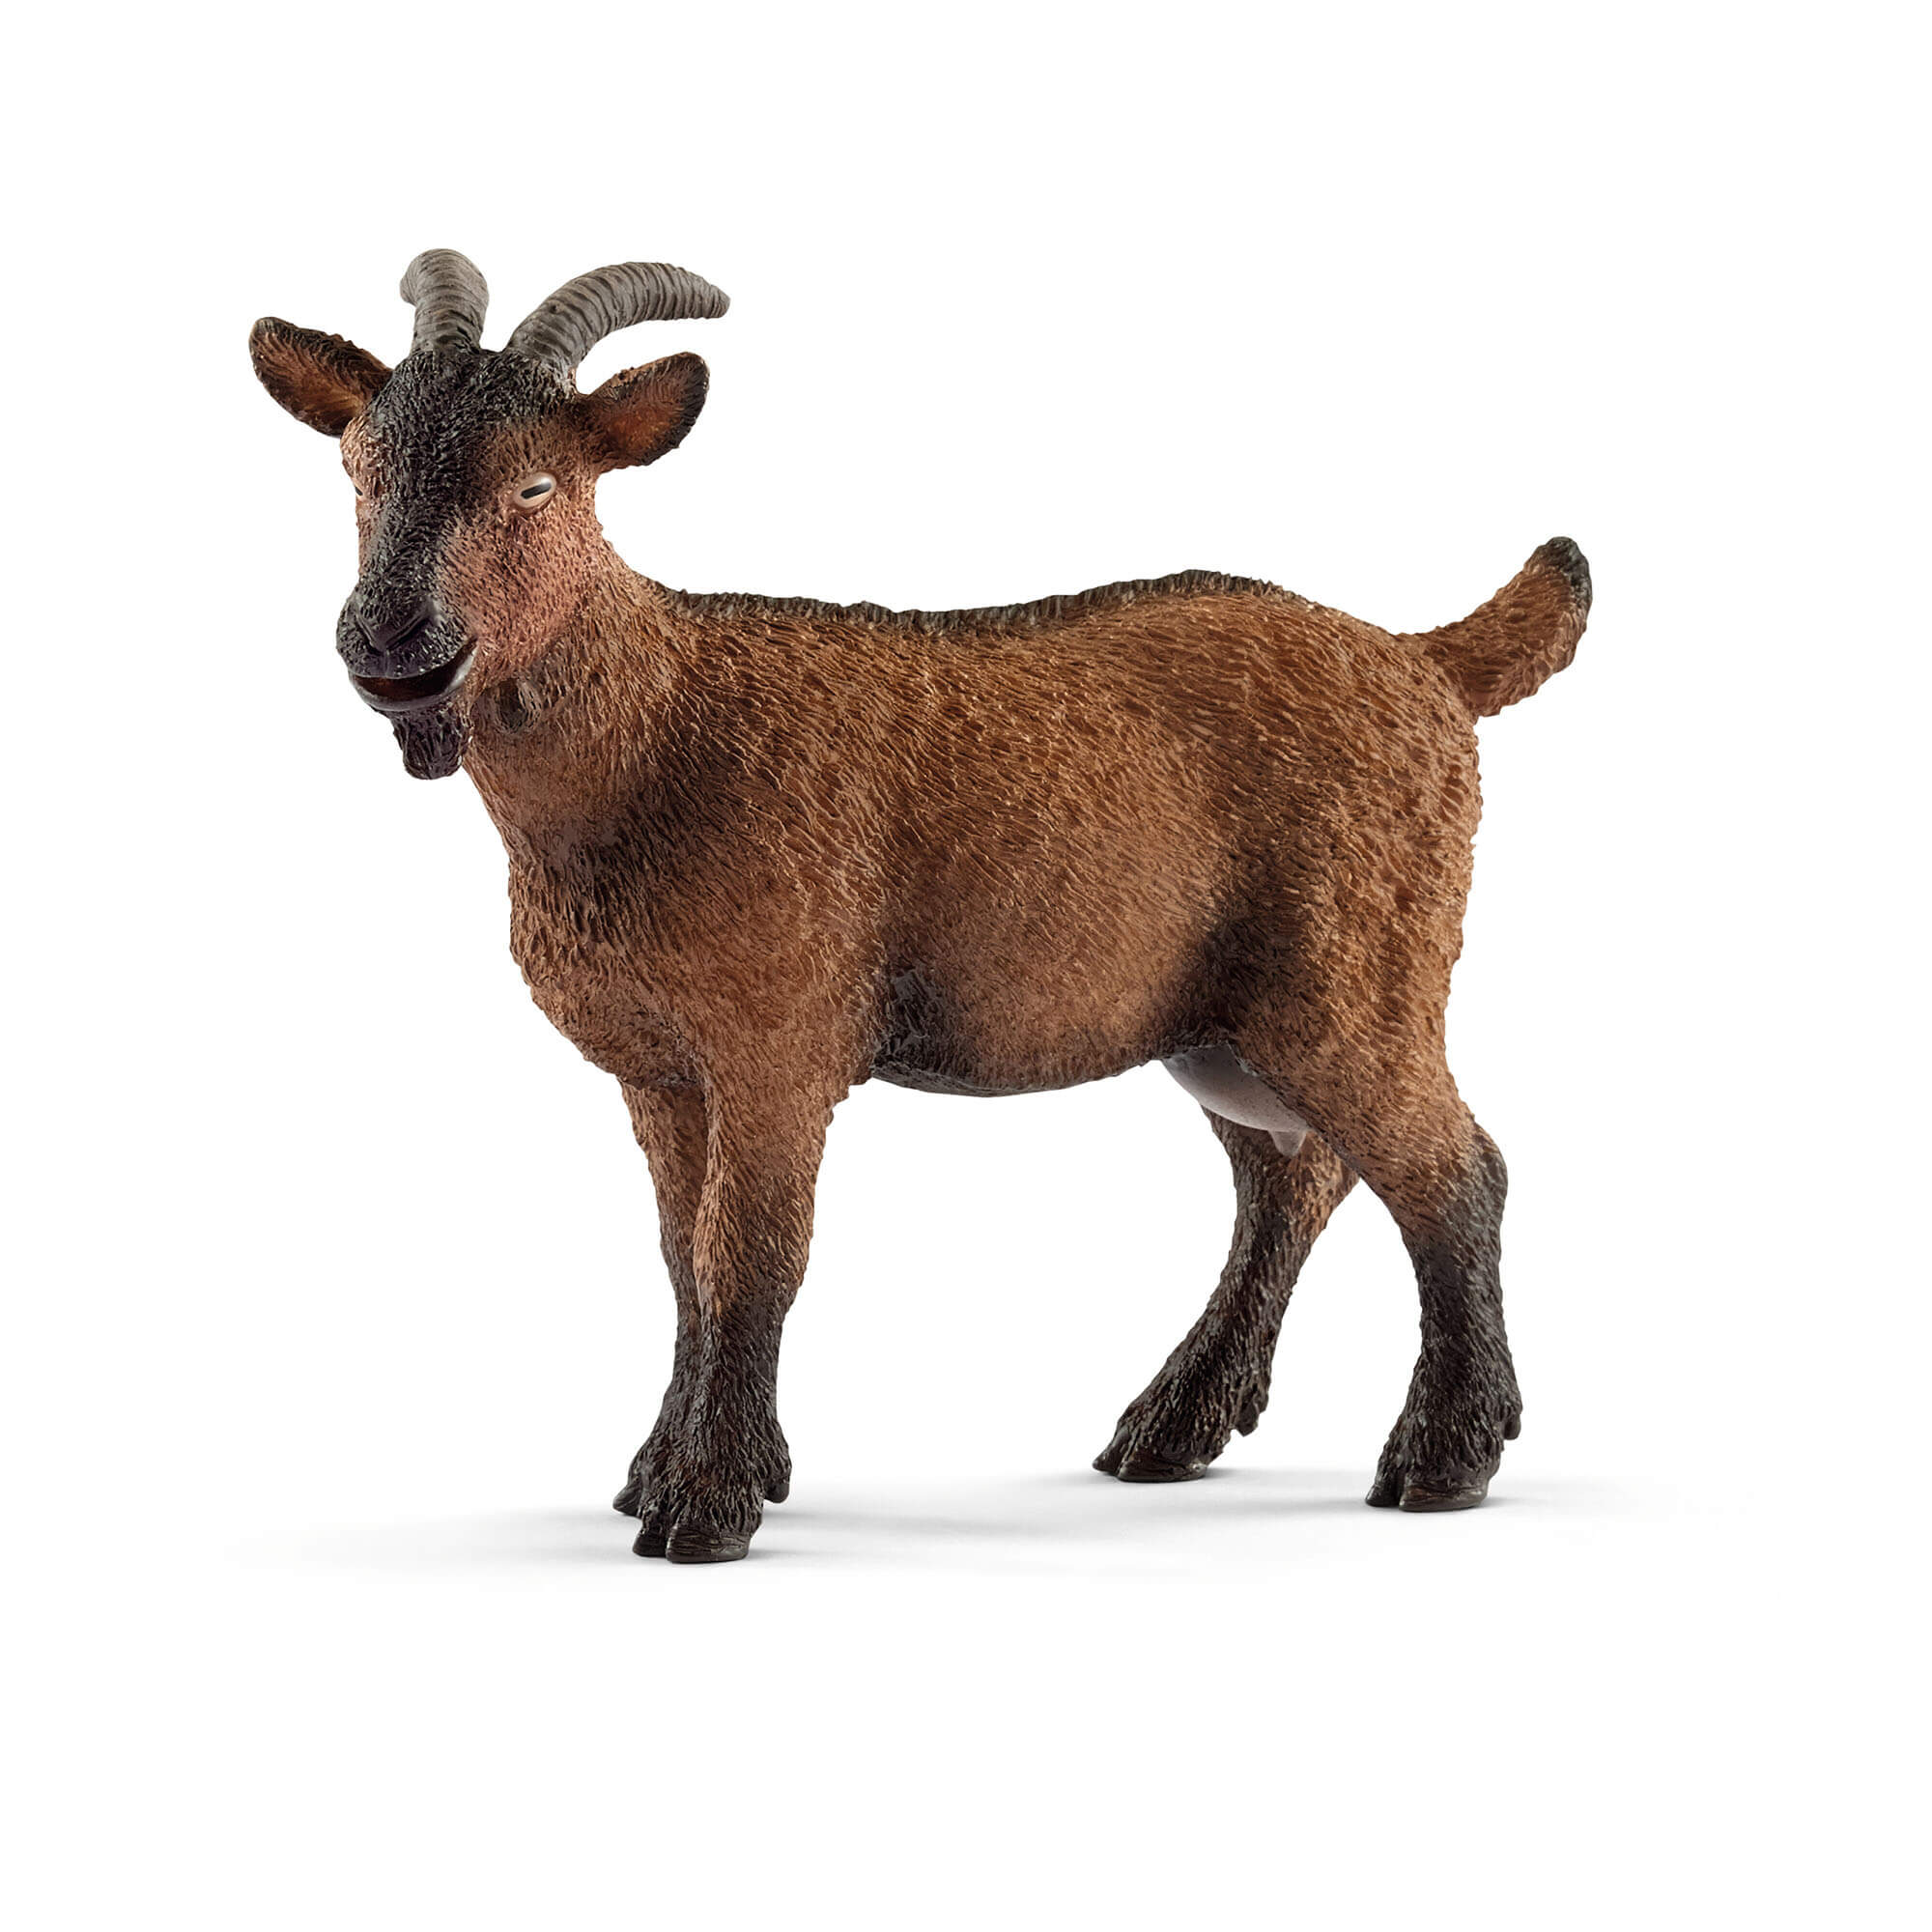 Schleich Farm World Goat Animal Figure